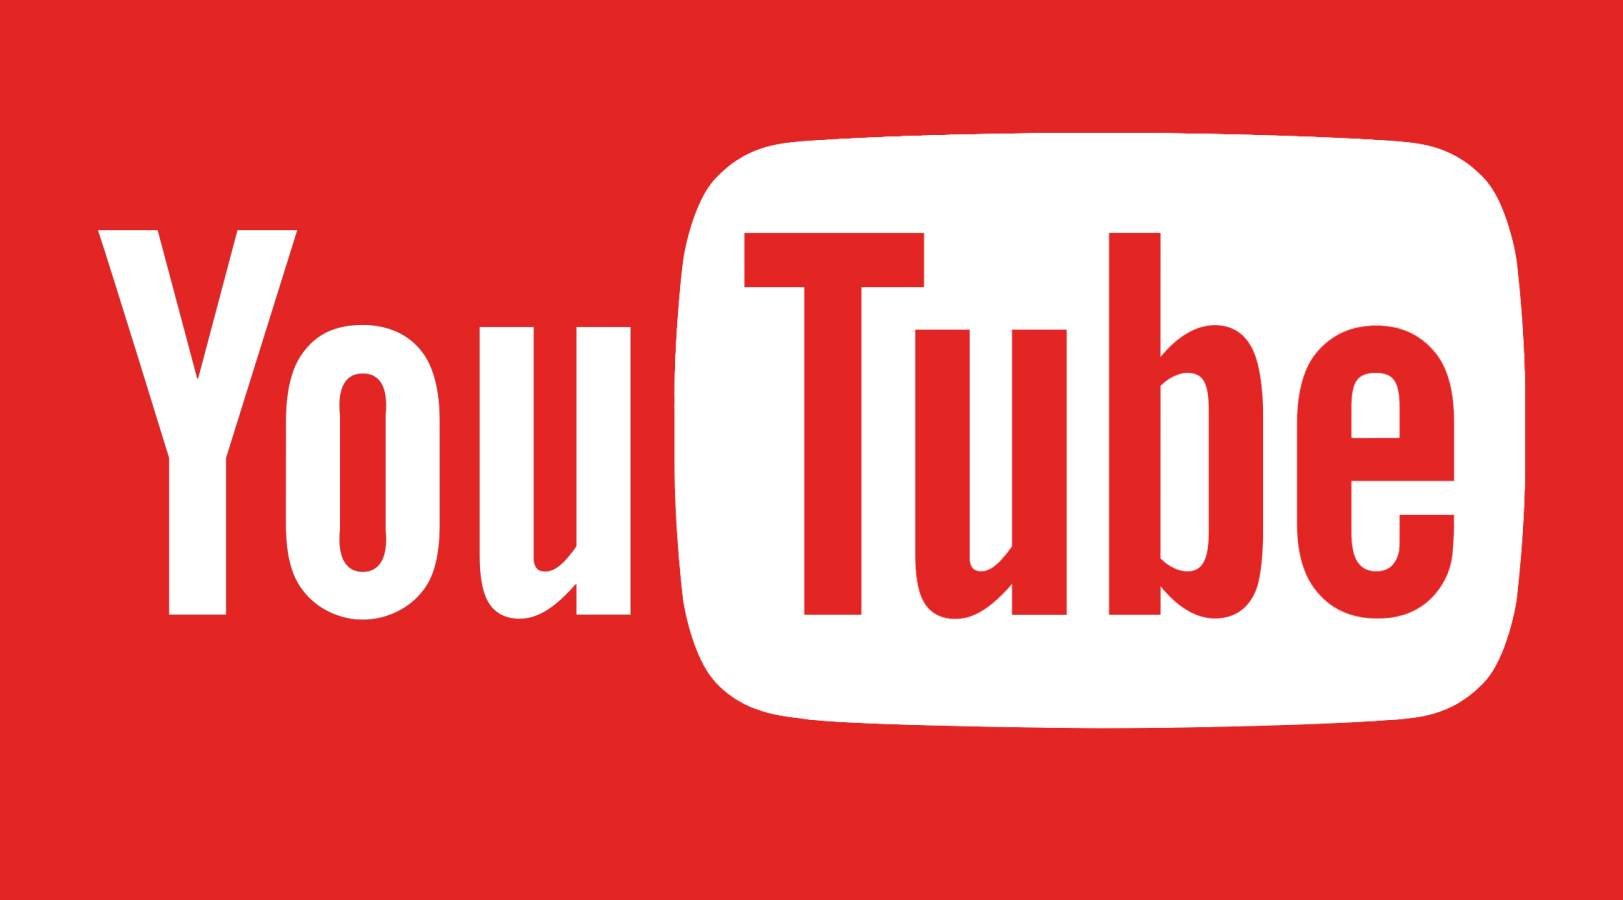 YouTube Noua Actualizare Lansata, iata cu ce Noutati Vine